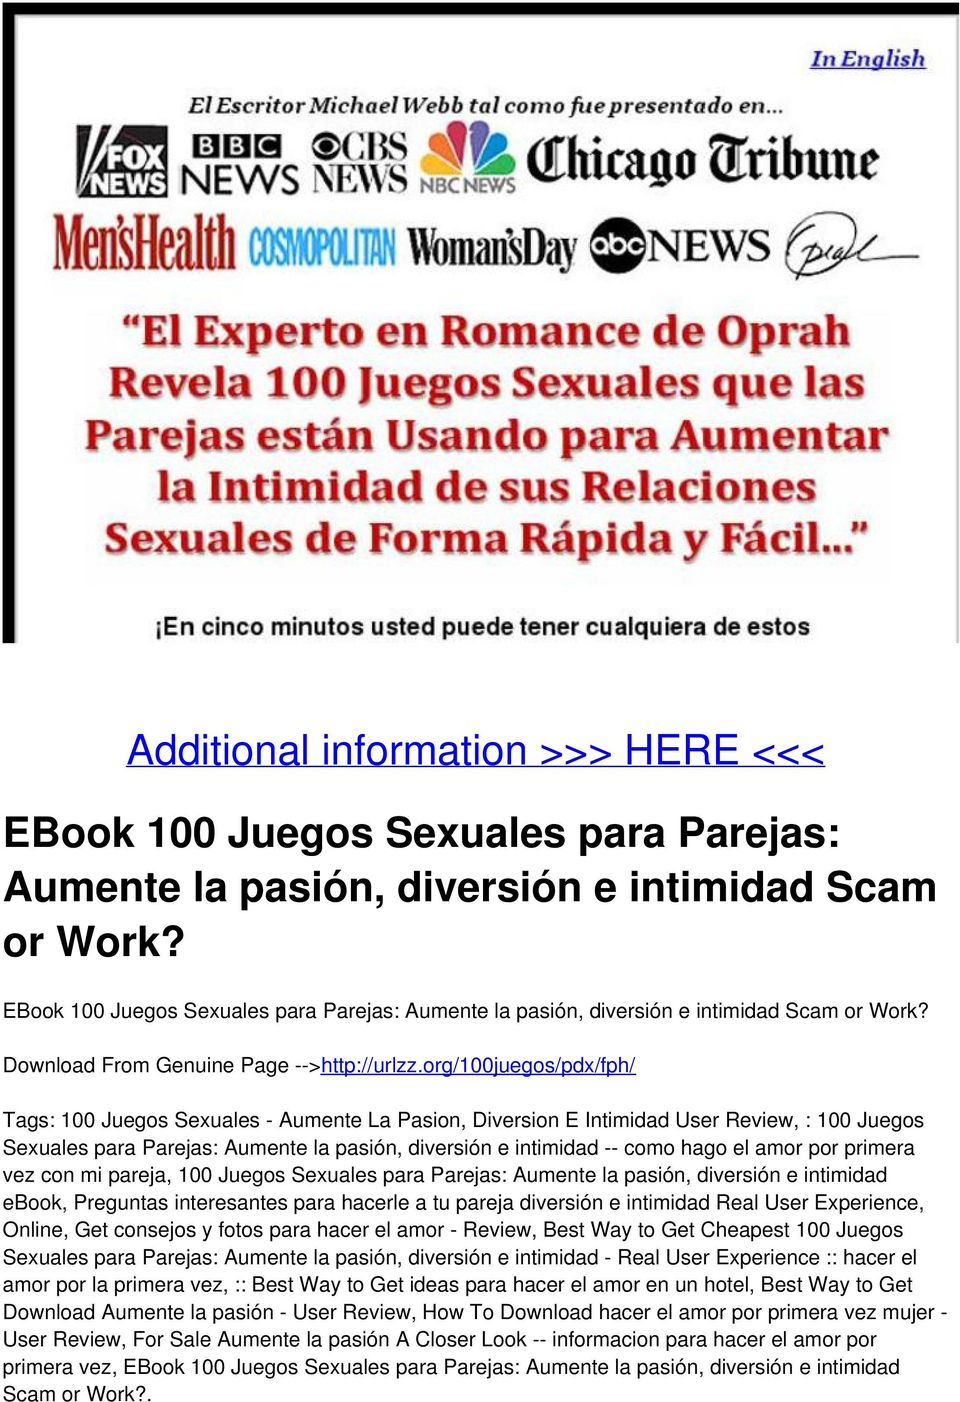 Additional information >>> HERE <<< EBook 100 Juegos Sexuales para Parejas:  Aumente la pasión, diversión e intimidad Scam or Work? - PDF Free Download